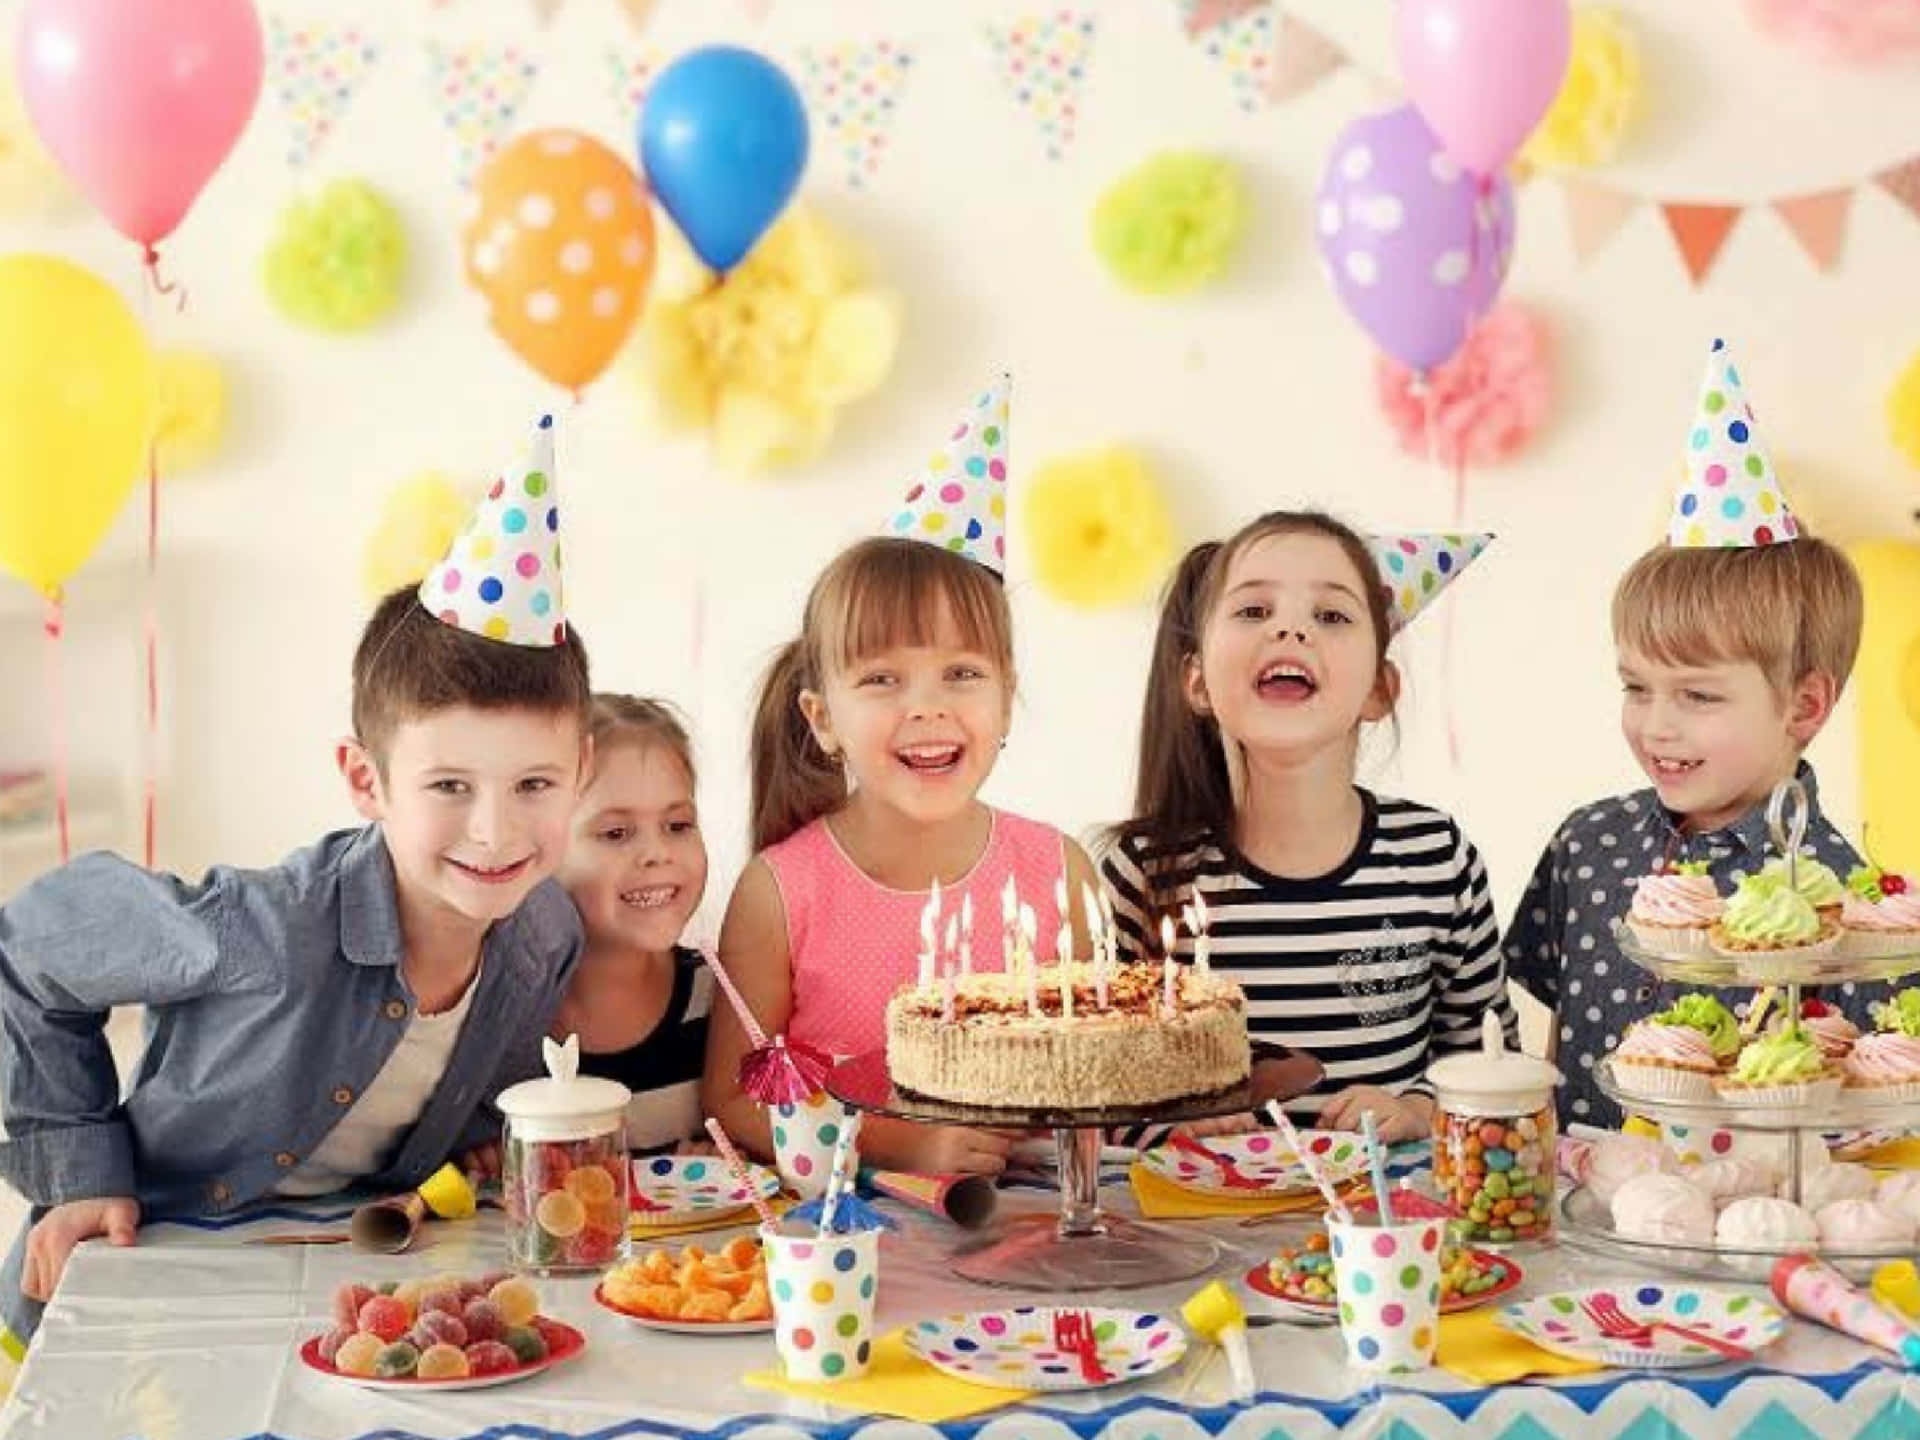 Barnpå Ett Födelsedagskalas Med Ballonger Och Tårta